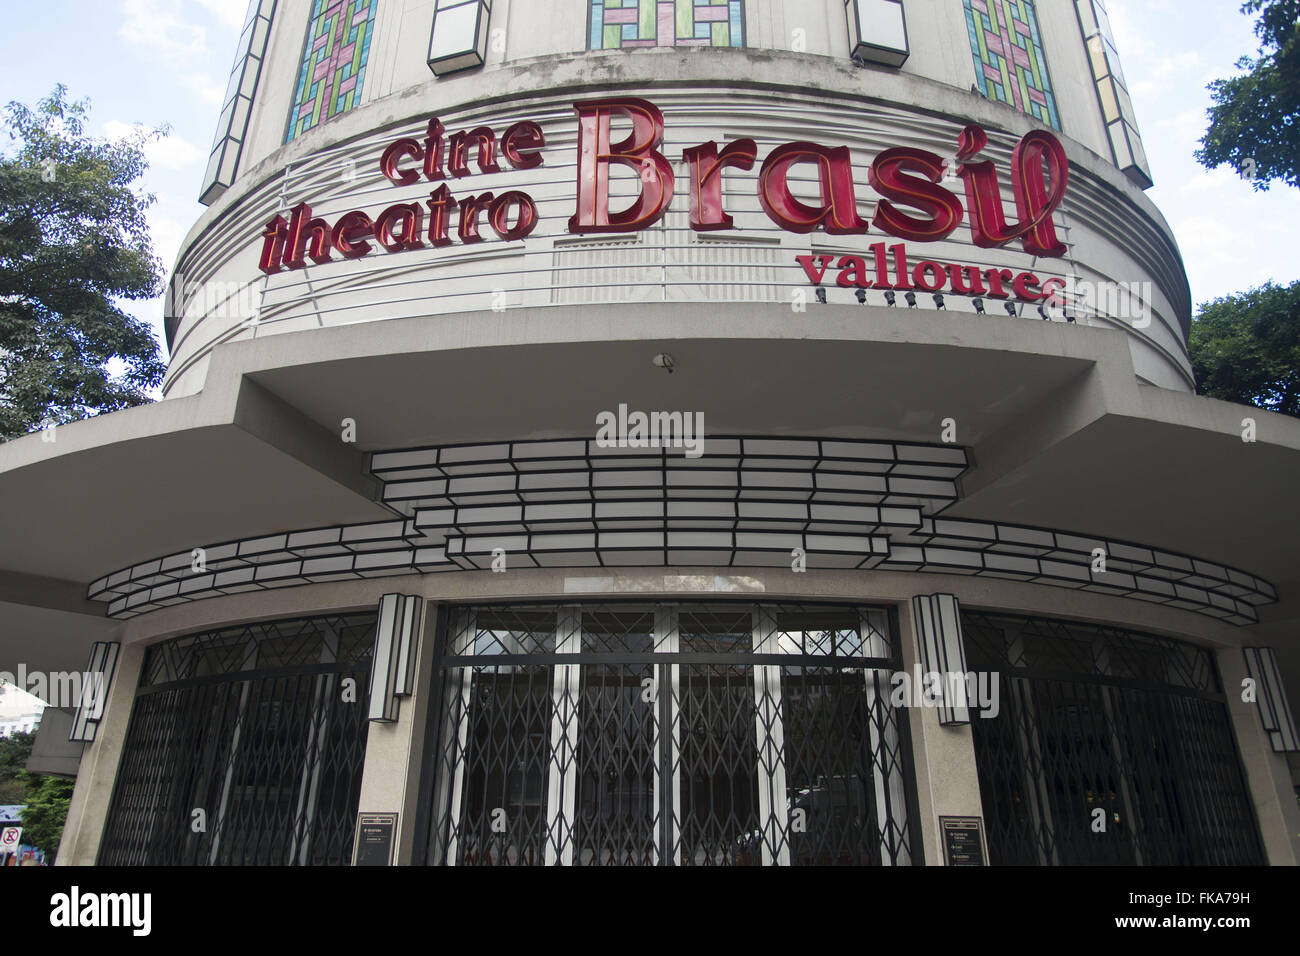 Cine Theatro Brésil Vallourec à l'angle des avenues Amazonas et Afonso Pena Banque D'Images